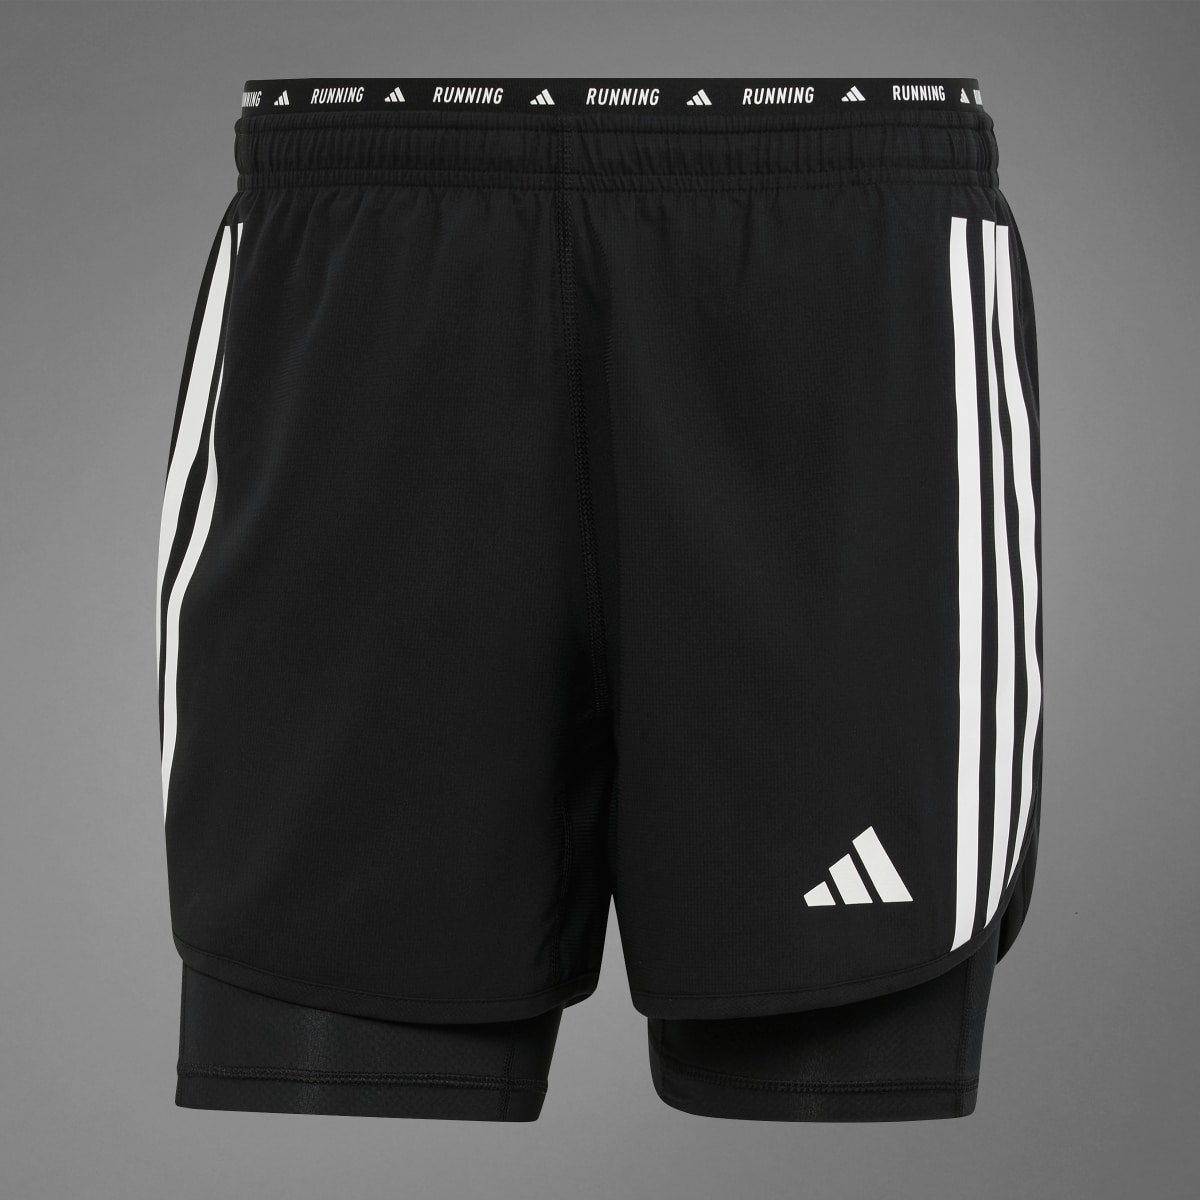 Adidas Own the Run 3-Streifen 2-in-1 Shorts. 9